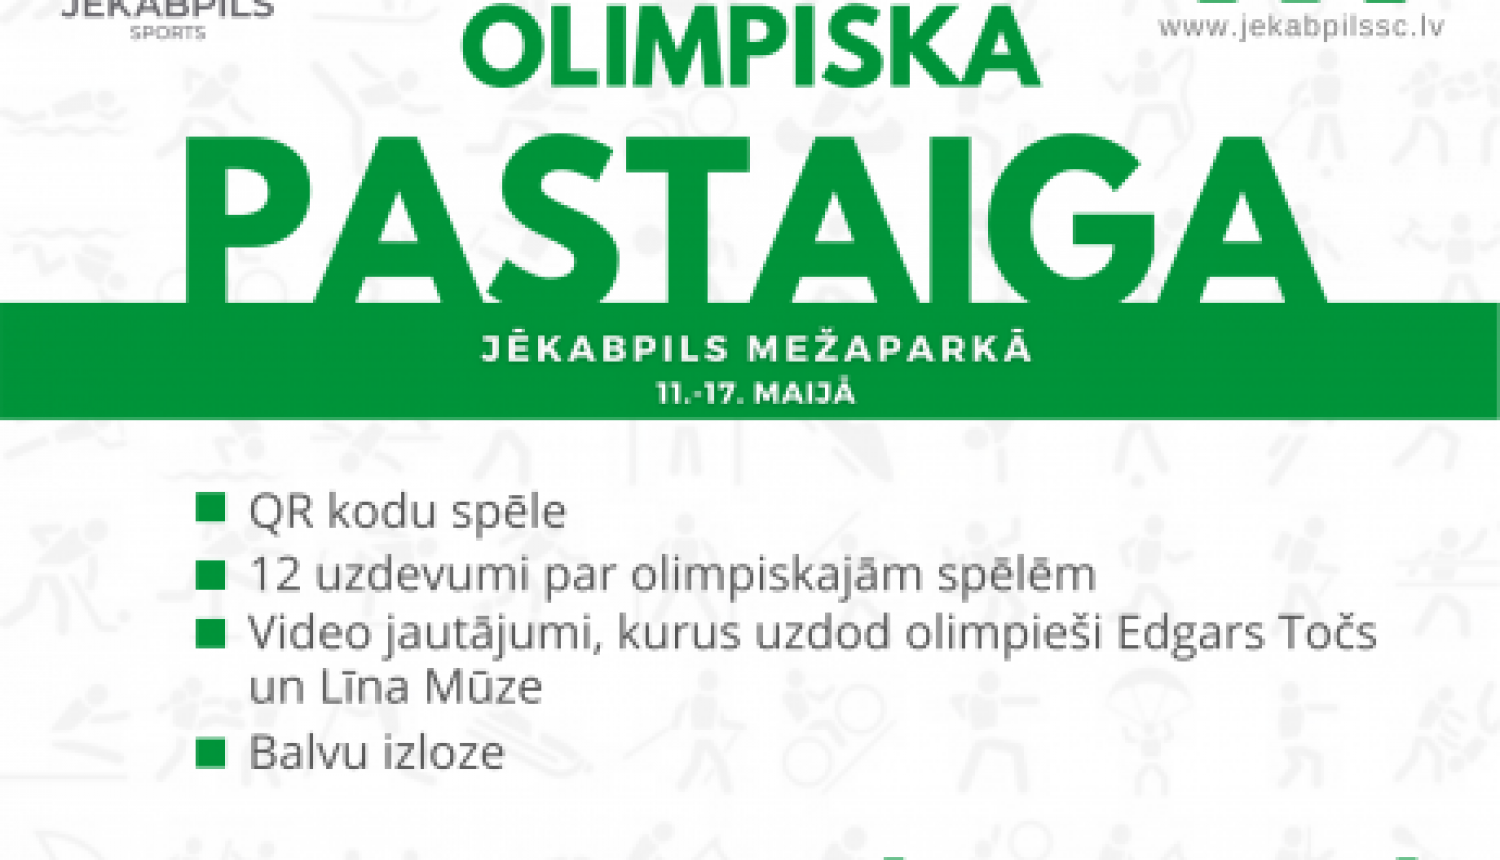 No 11. līdz 17. maijam Jēkabpils Mežaparkā ikviens var doties Olimpiskajā pastaigā